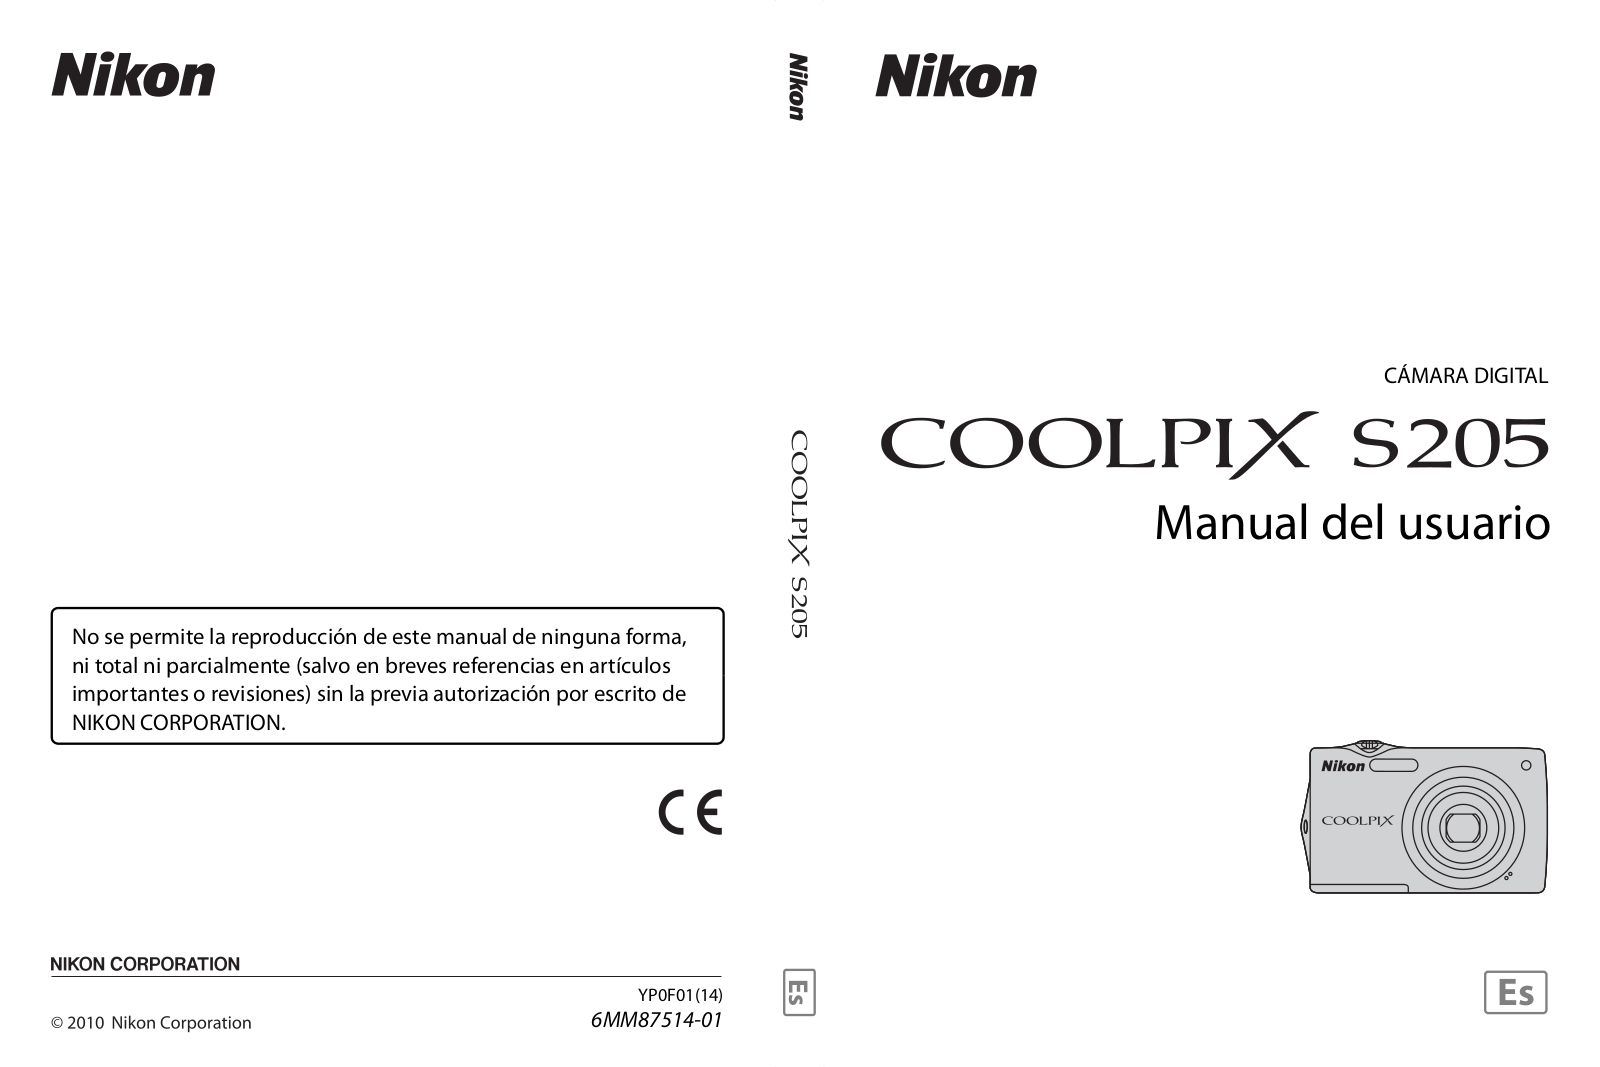 Nikon COOLPIX S205 Manual